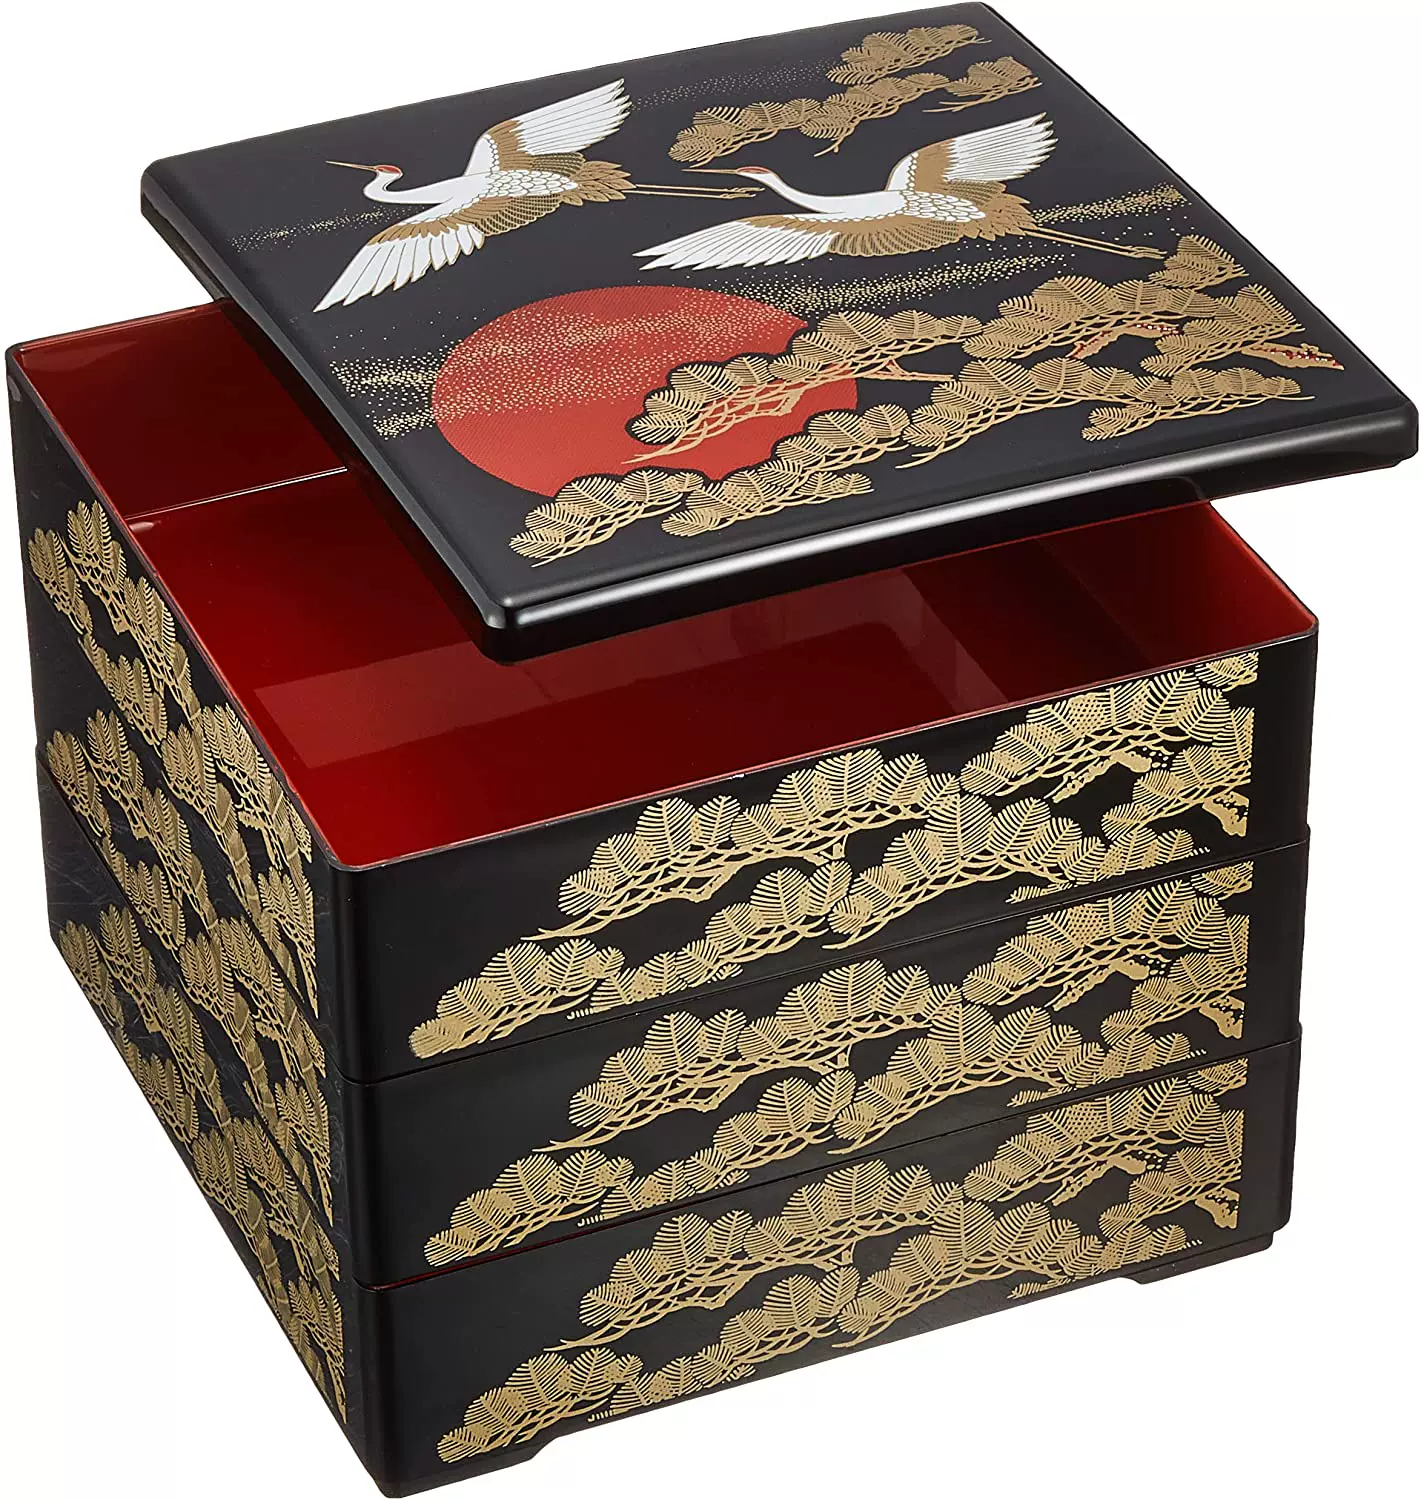 日本若泉漆器3段重箱6.5寸黒內朱塗日の出鶴多層便當盒-Taobao